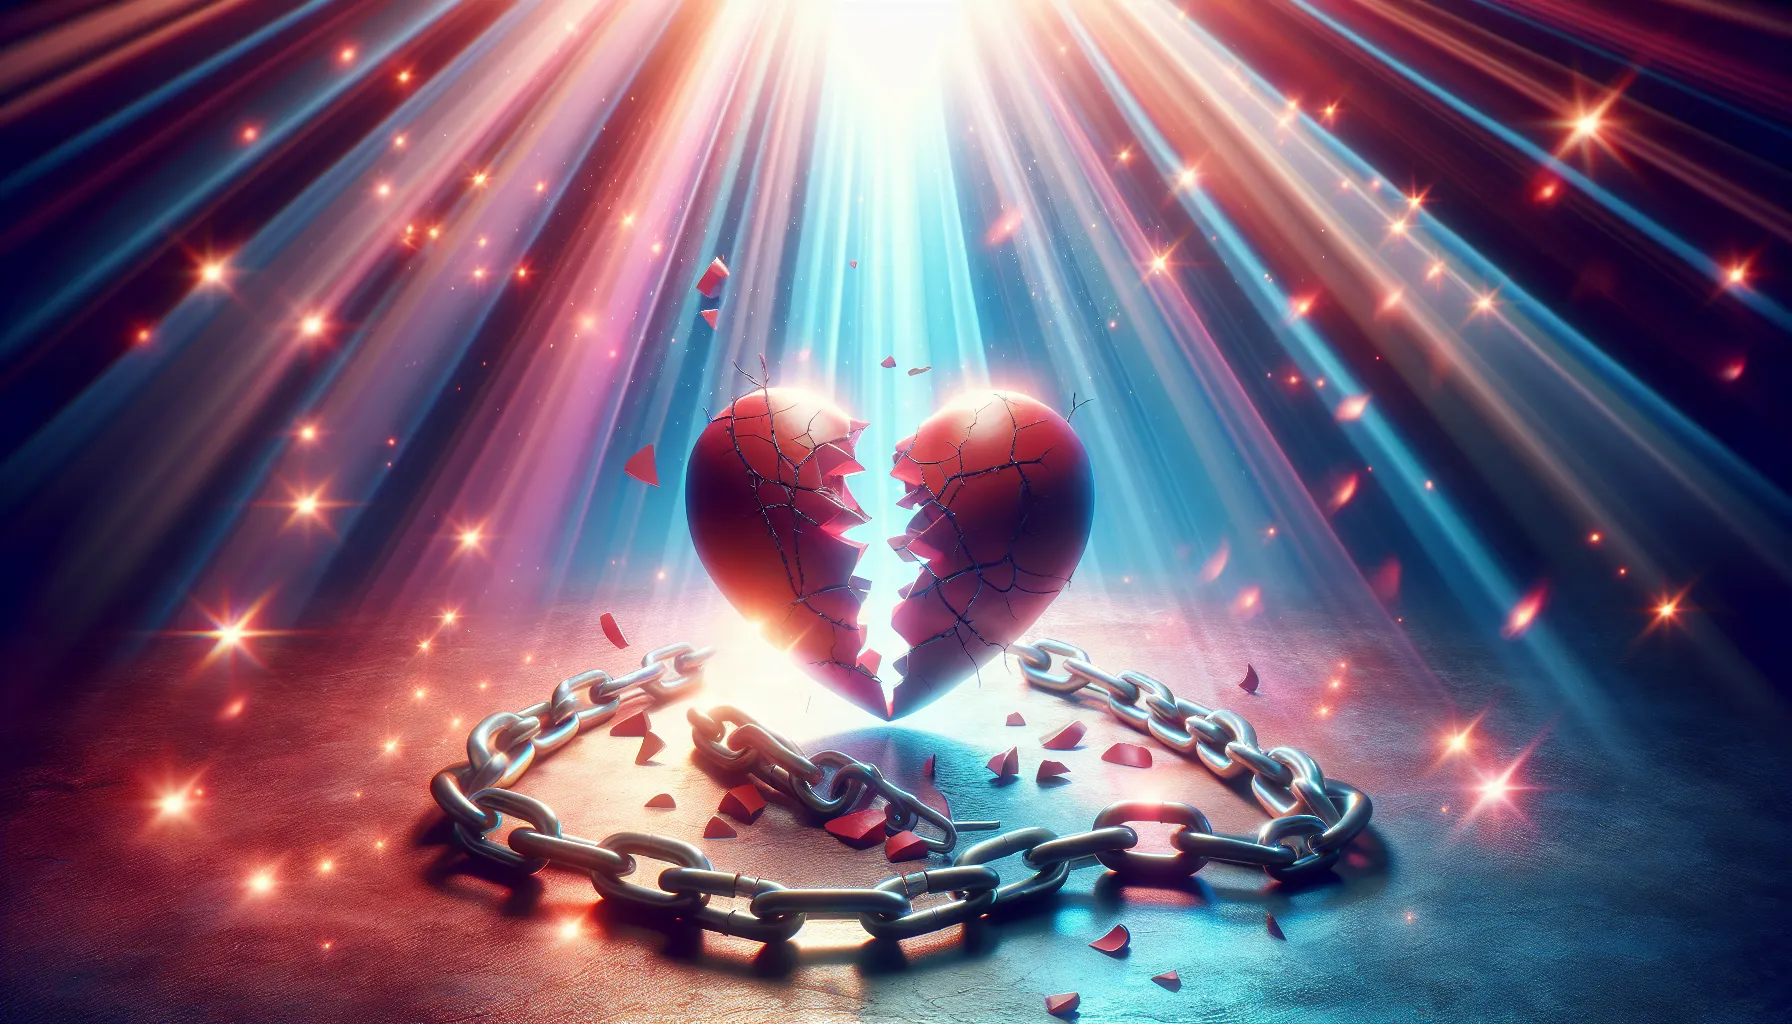 Imagen representativa: Corazón roto y cadenas simbolizando el resentimiento